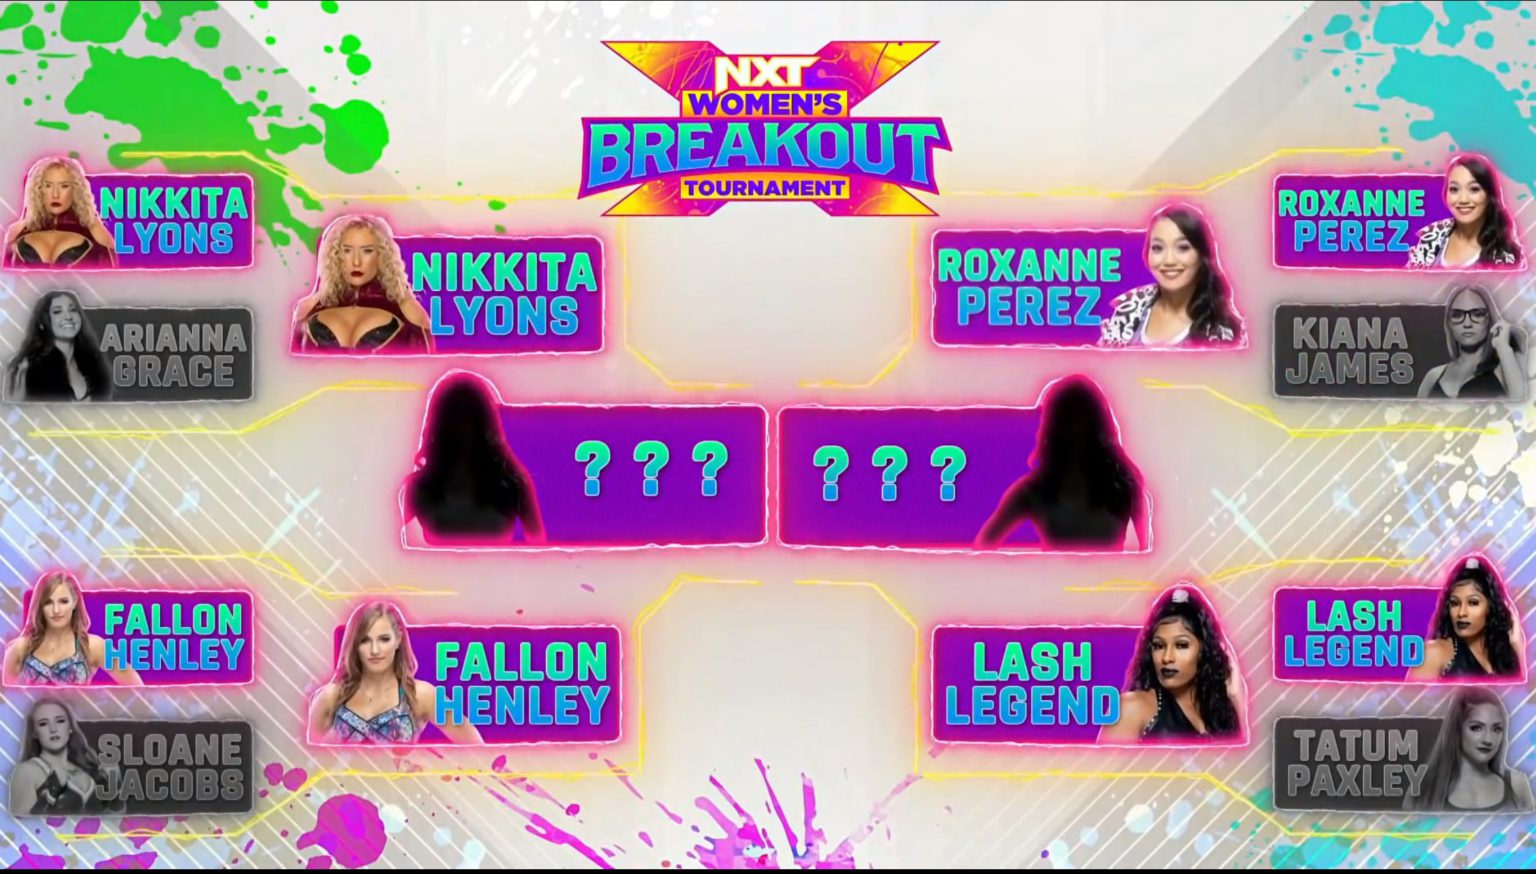 NXT Women's Breakout Tournament